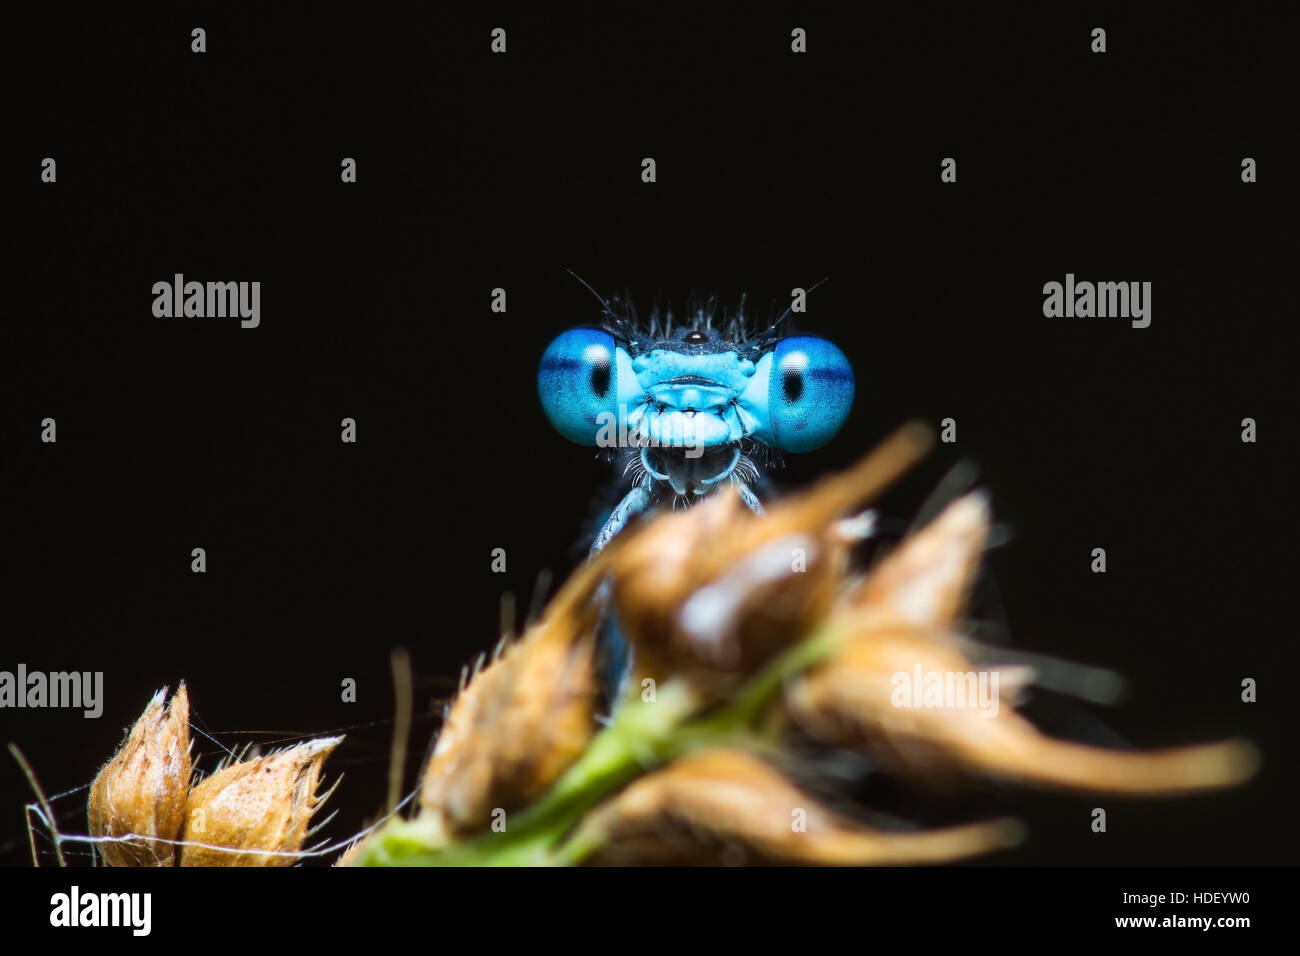 Funny sorpreso libellula blu ritratto su sfondo scuro Foto Stock